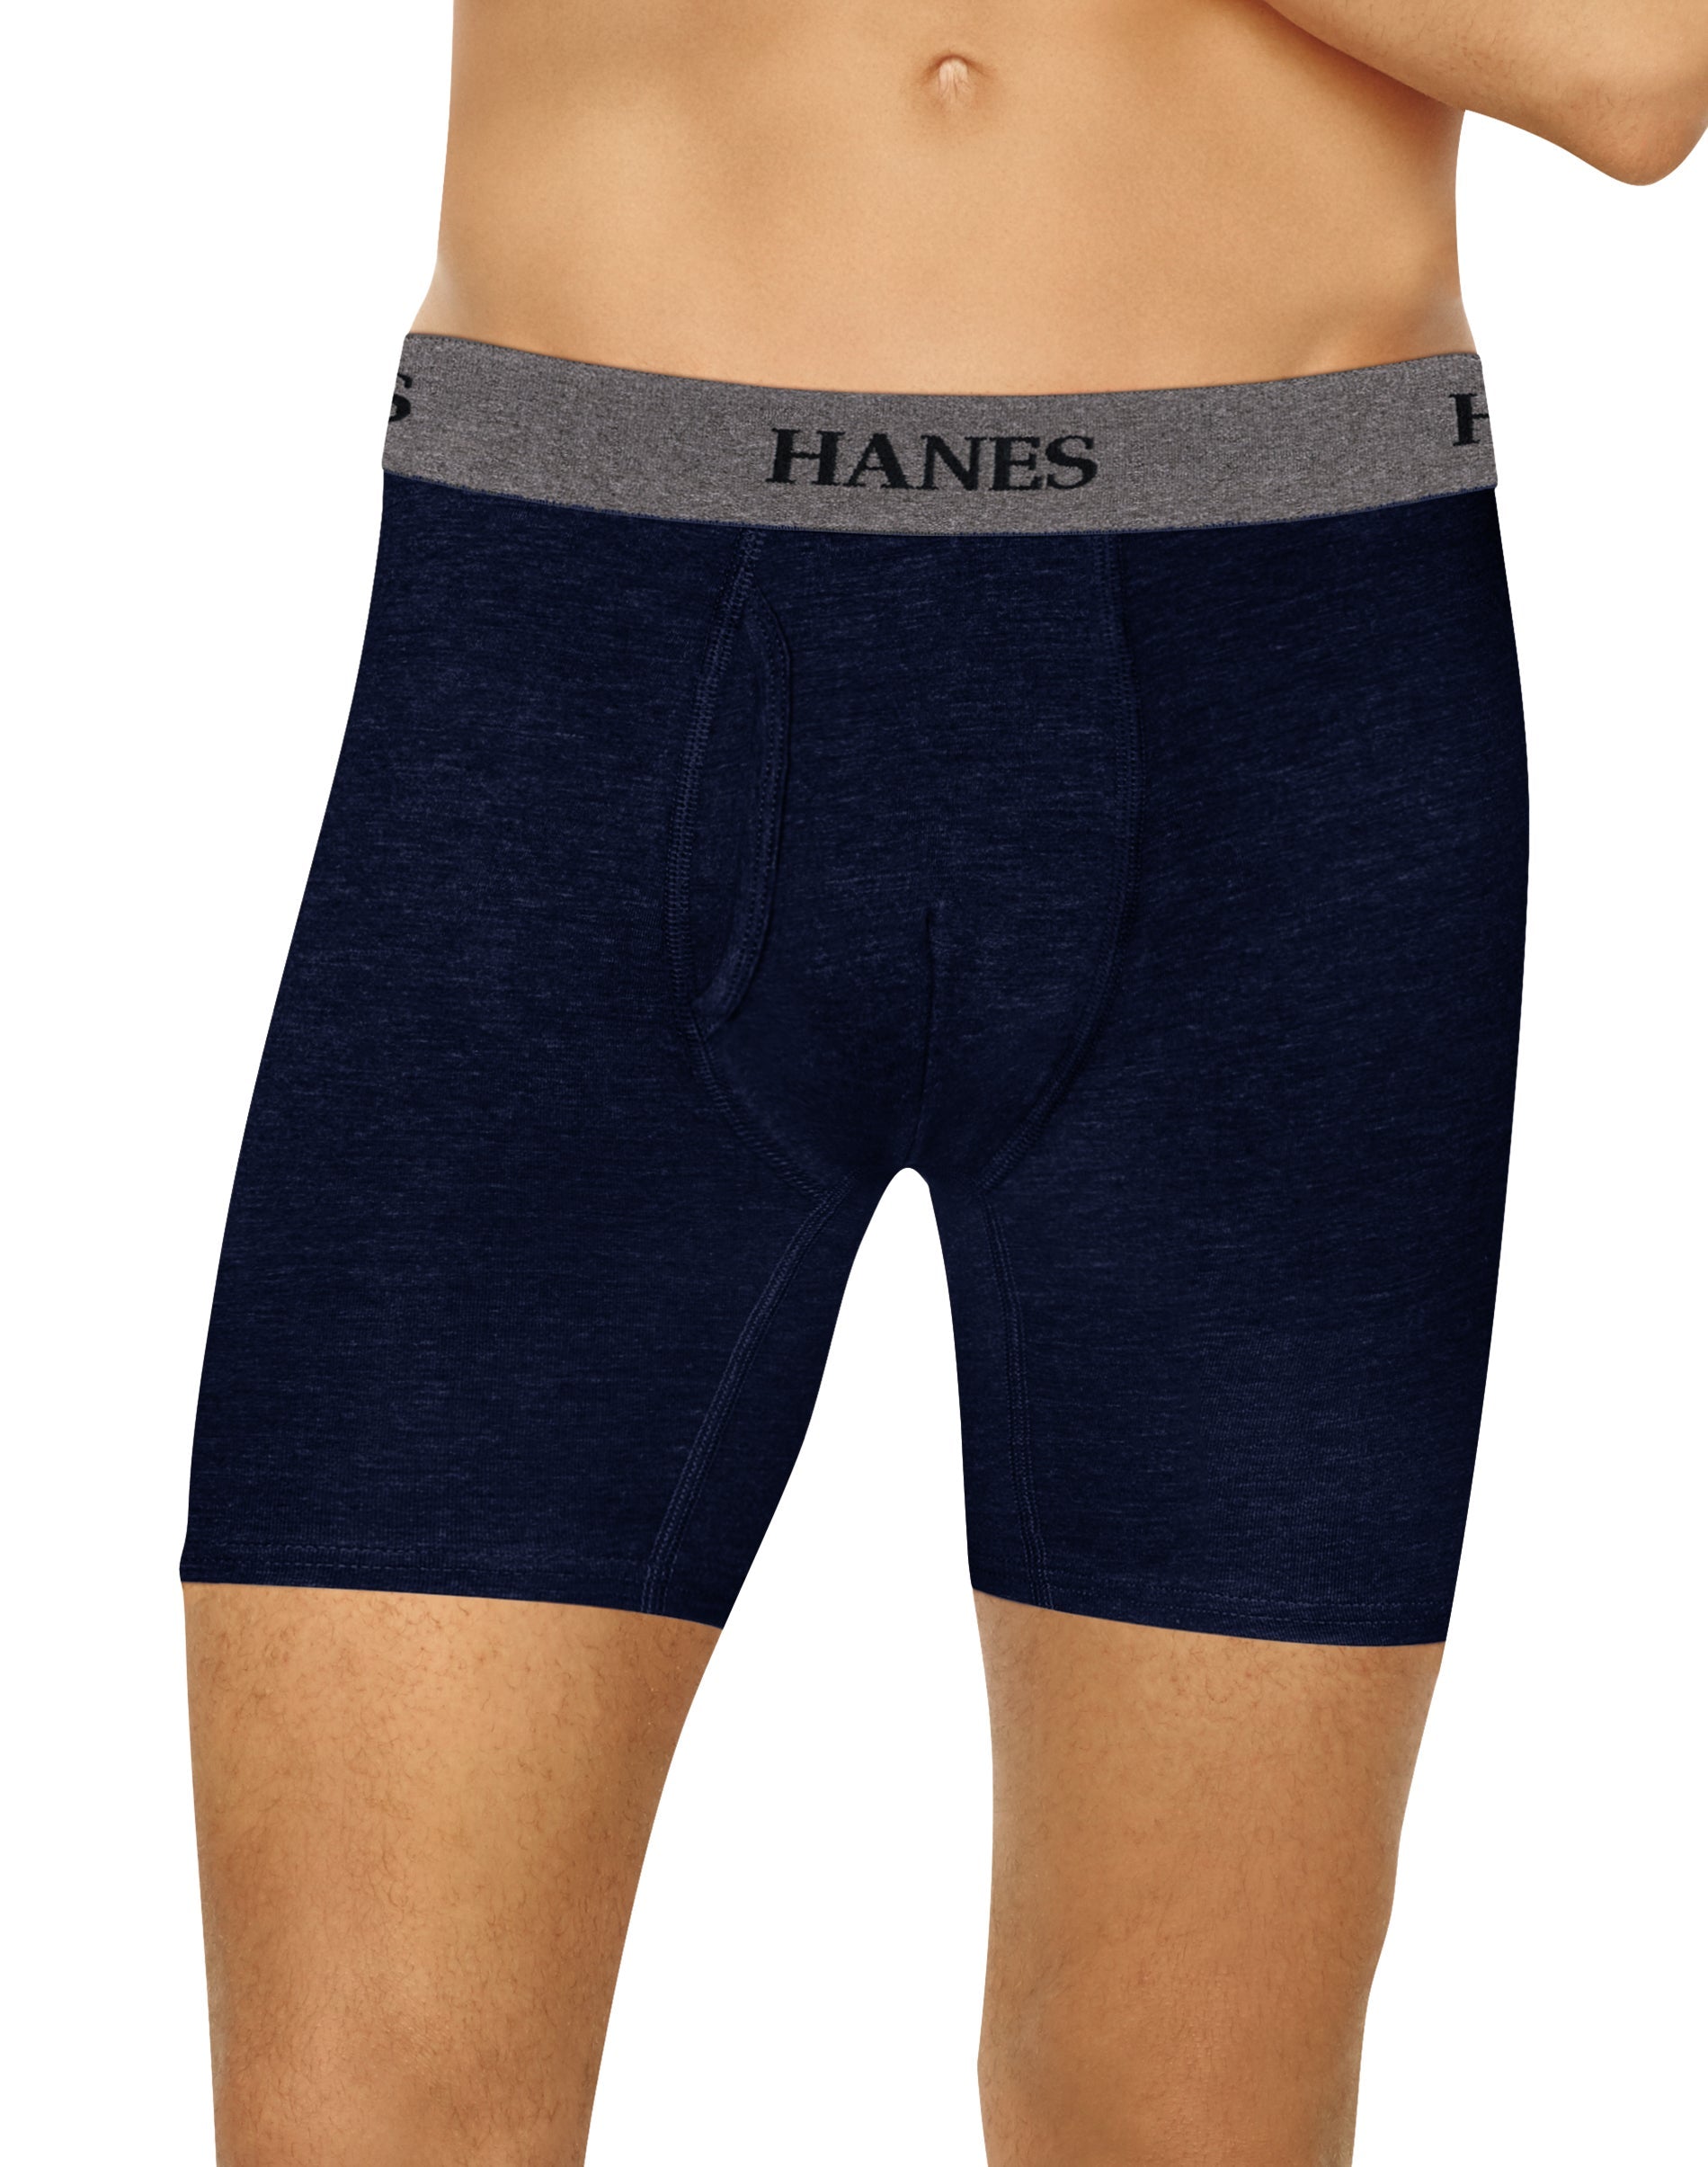 N/W/B Hanes 3 Boxer Briefs Premium Boyfriend Cotton/Stretch Gray